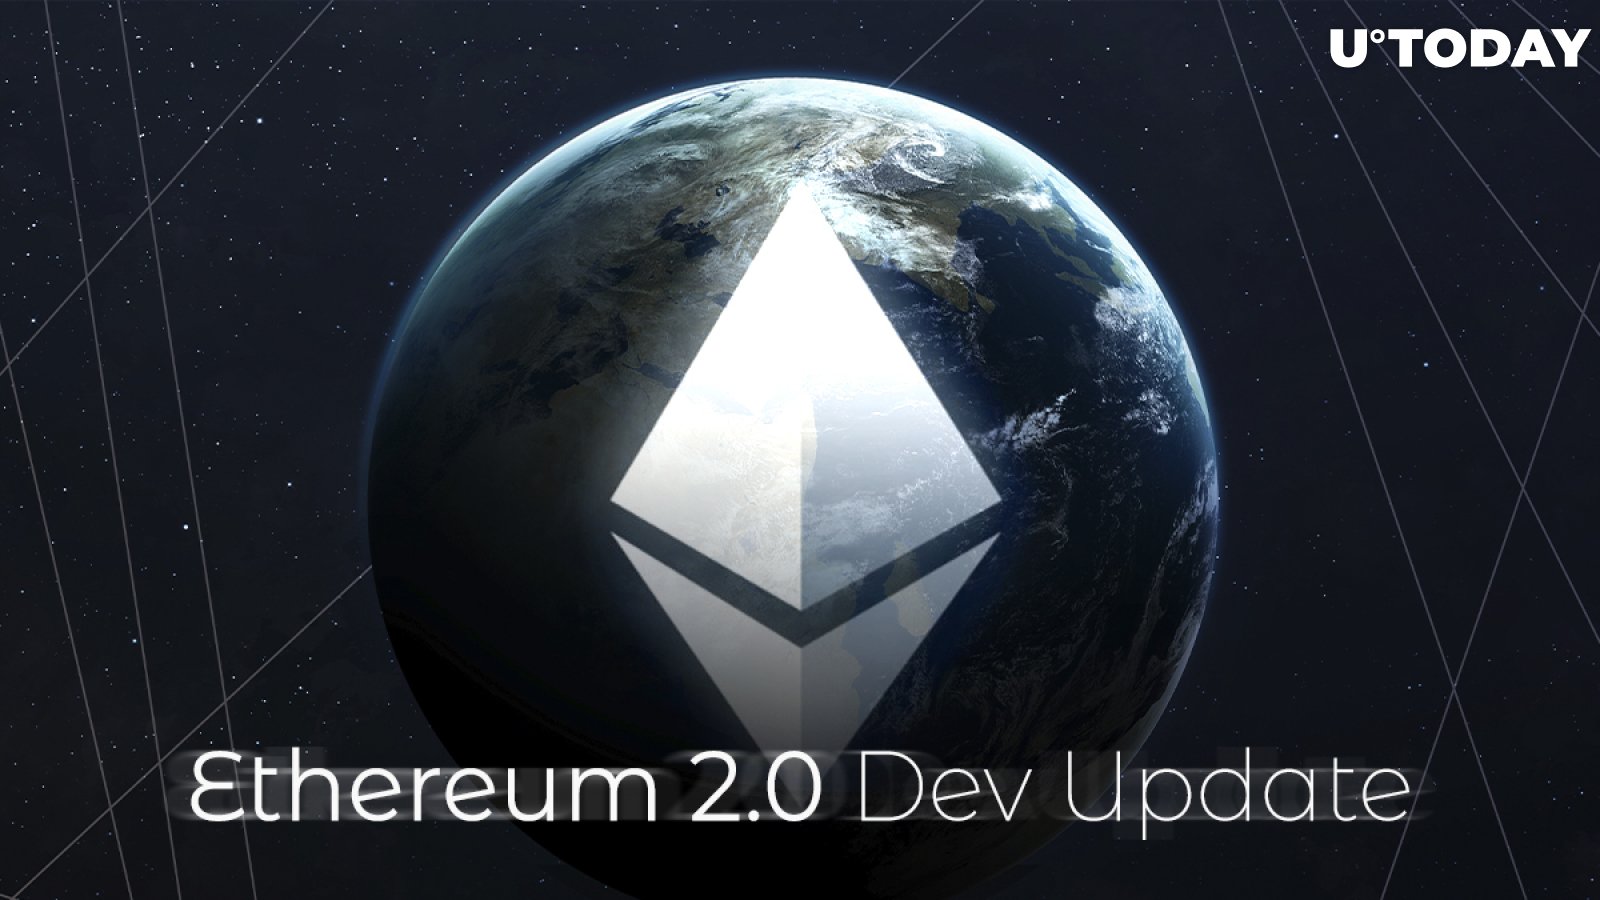 Ethereum Foundation Releases Ethereum 2.0 Dev Update: Audit, Explorer, 16K Validators